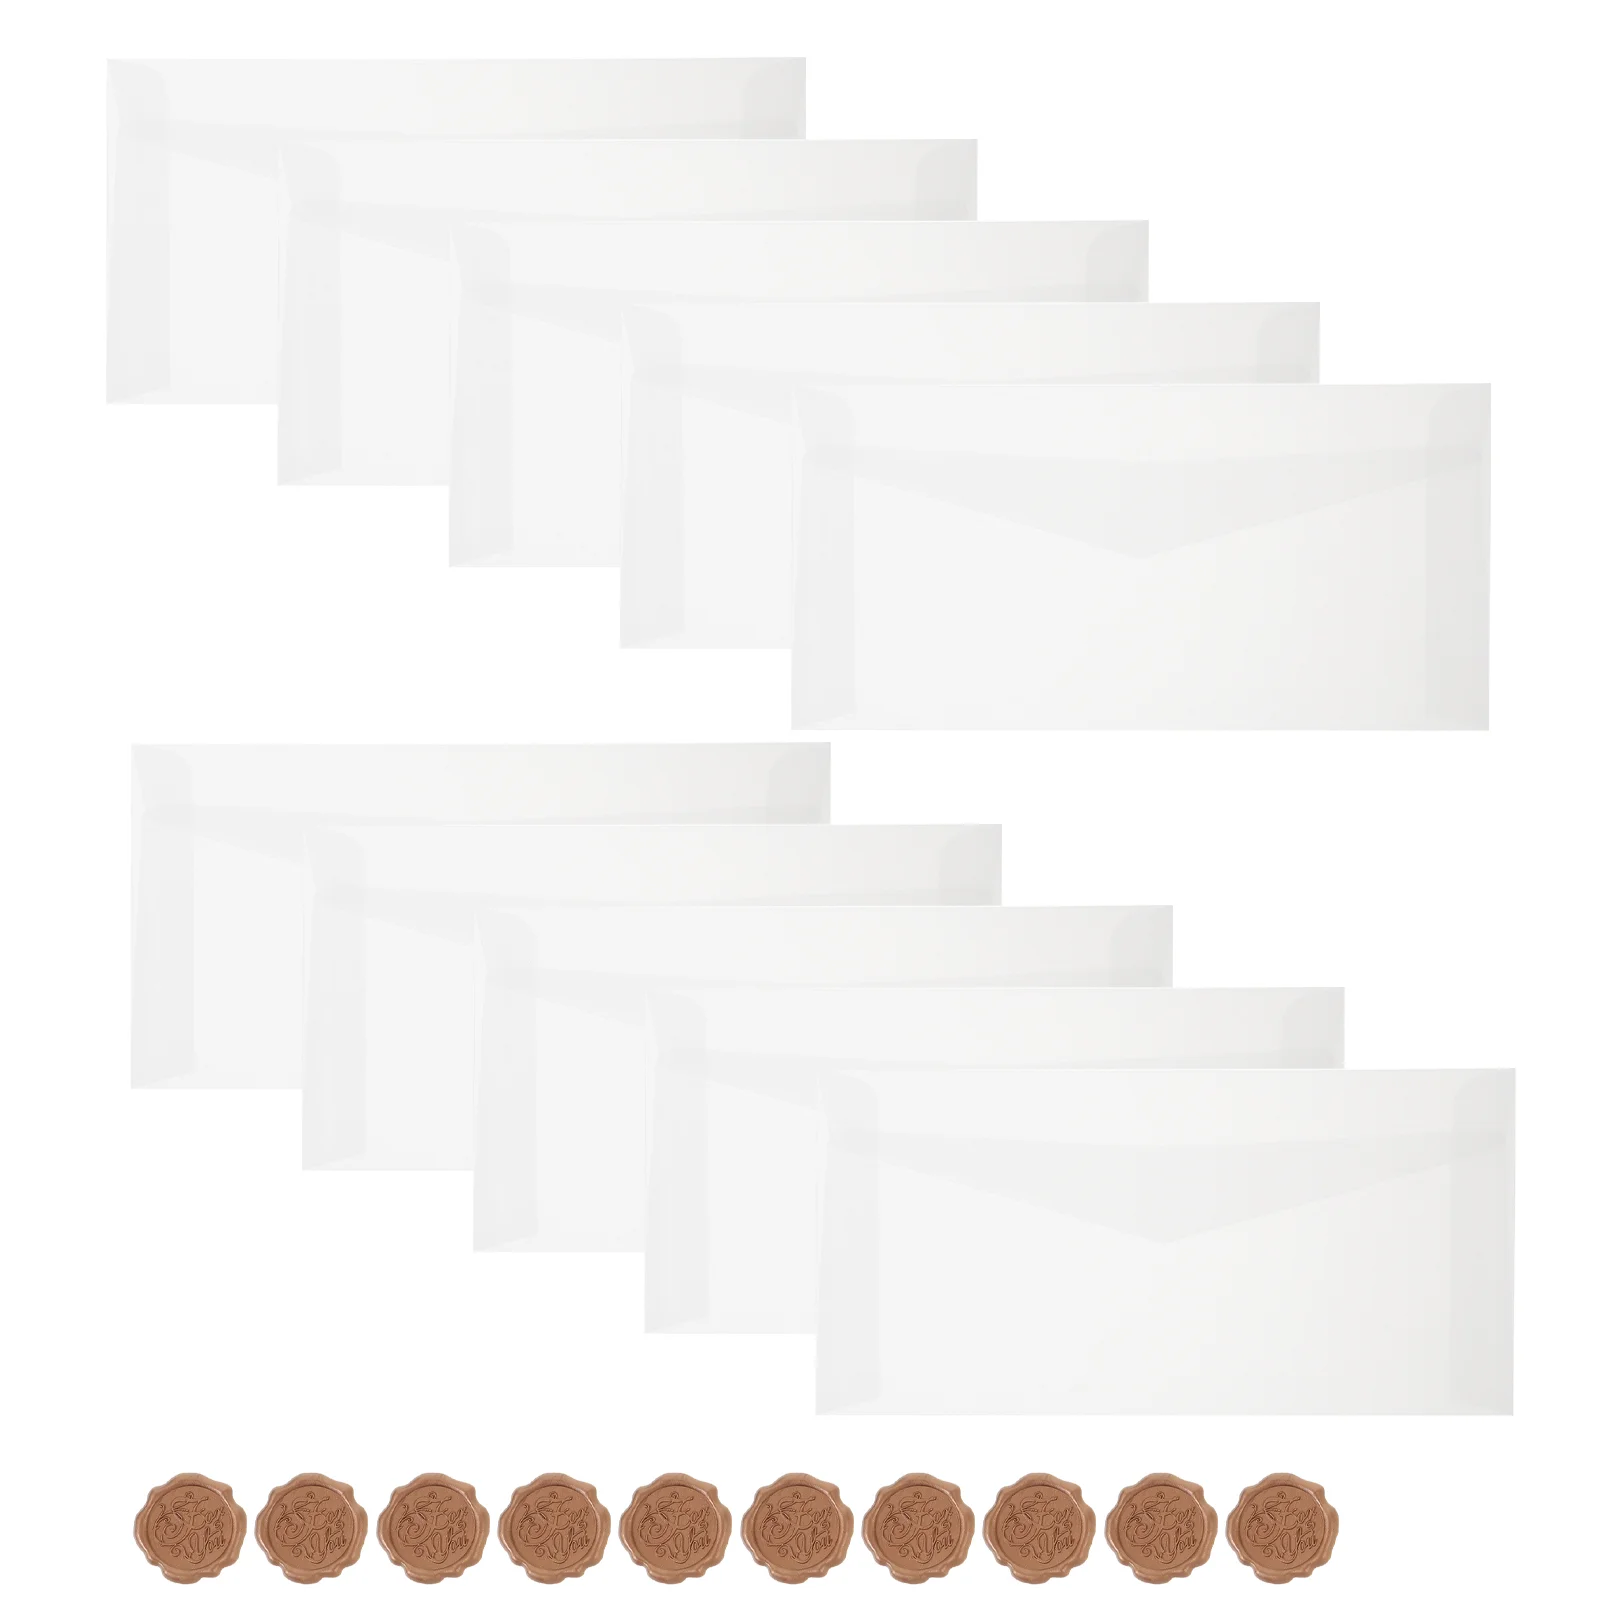 10 Sets Translucent Envelopes Invitation Cards Envelope Blank Envelopes Practical Envelopes